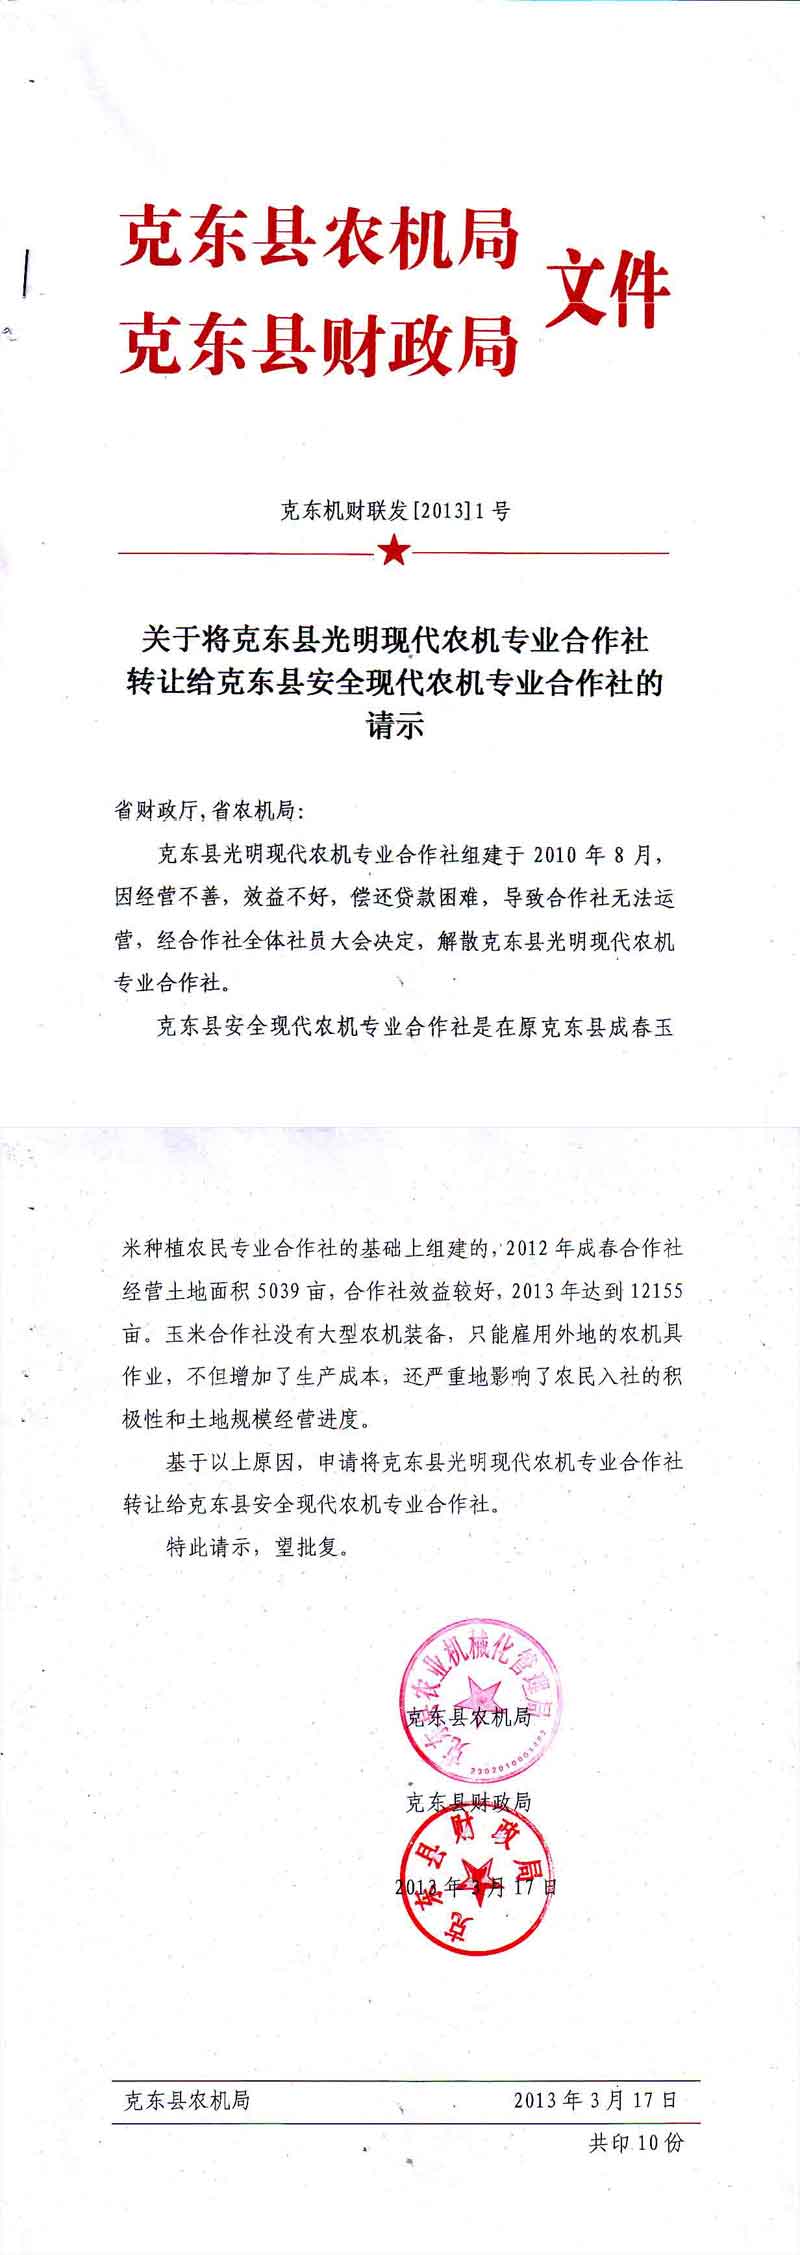 【案例】黑龙江省现代农机专业合作社应该如何